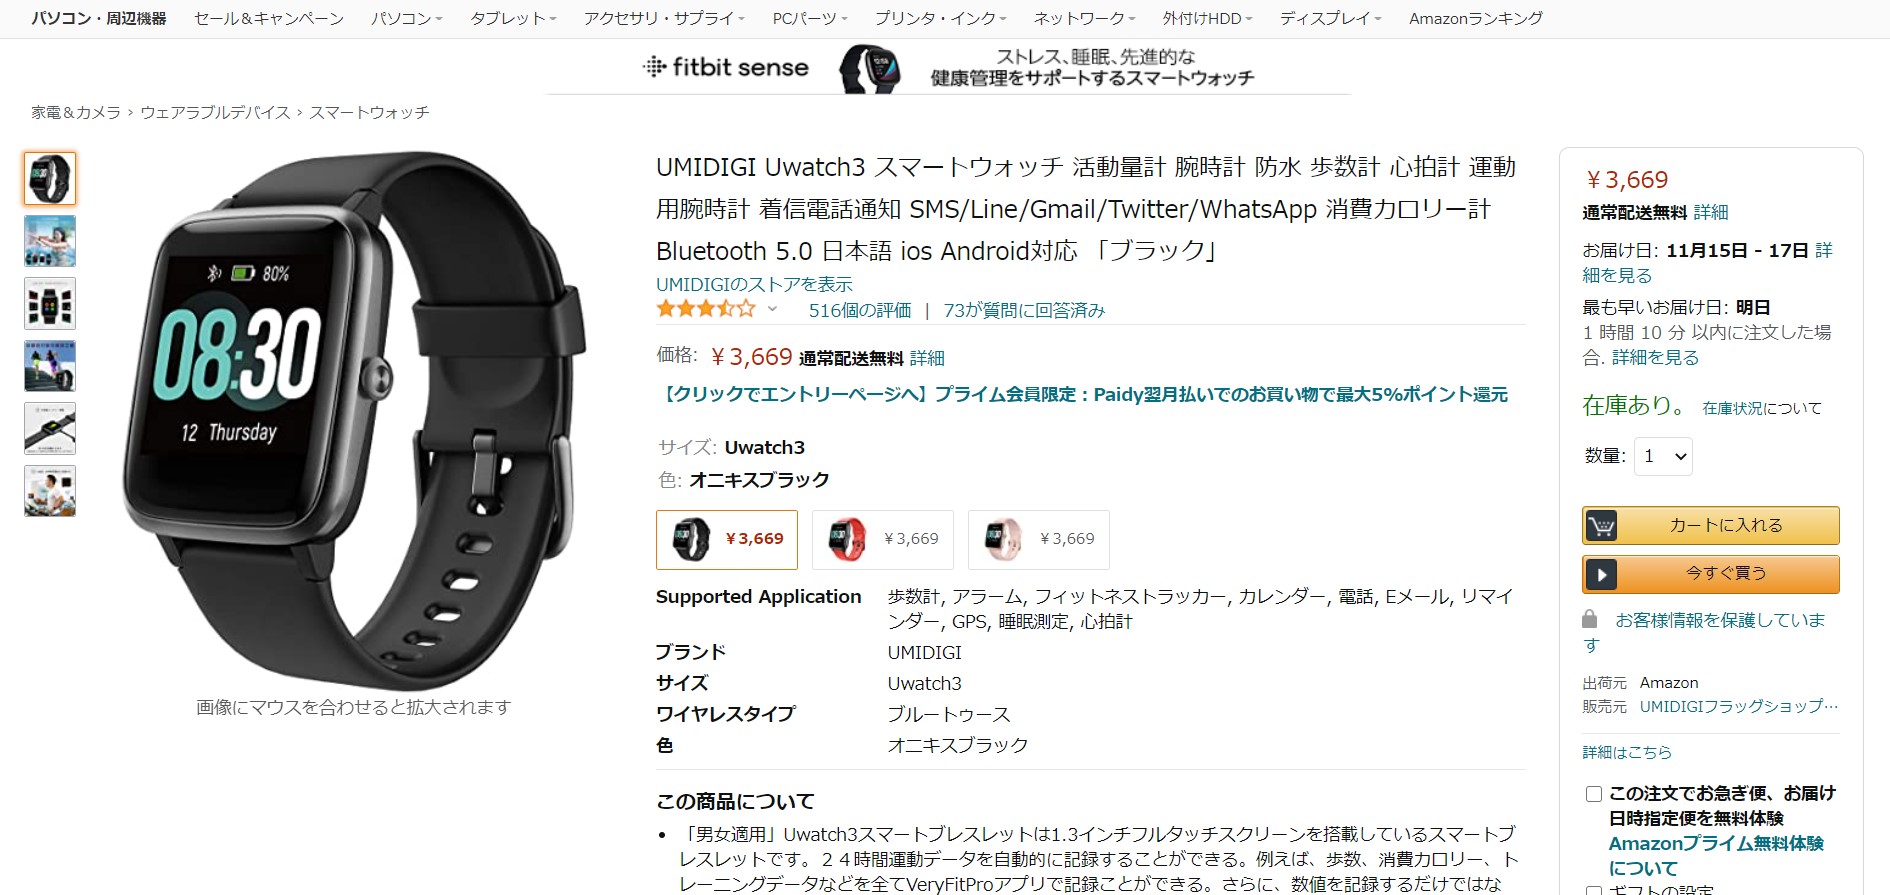 スマートウォッチ】itDEAL Smart Watch M16レビュー【開封の儀】 | muralog